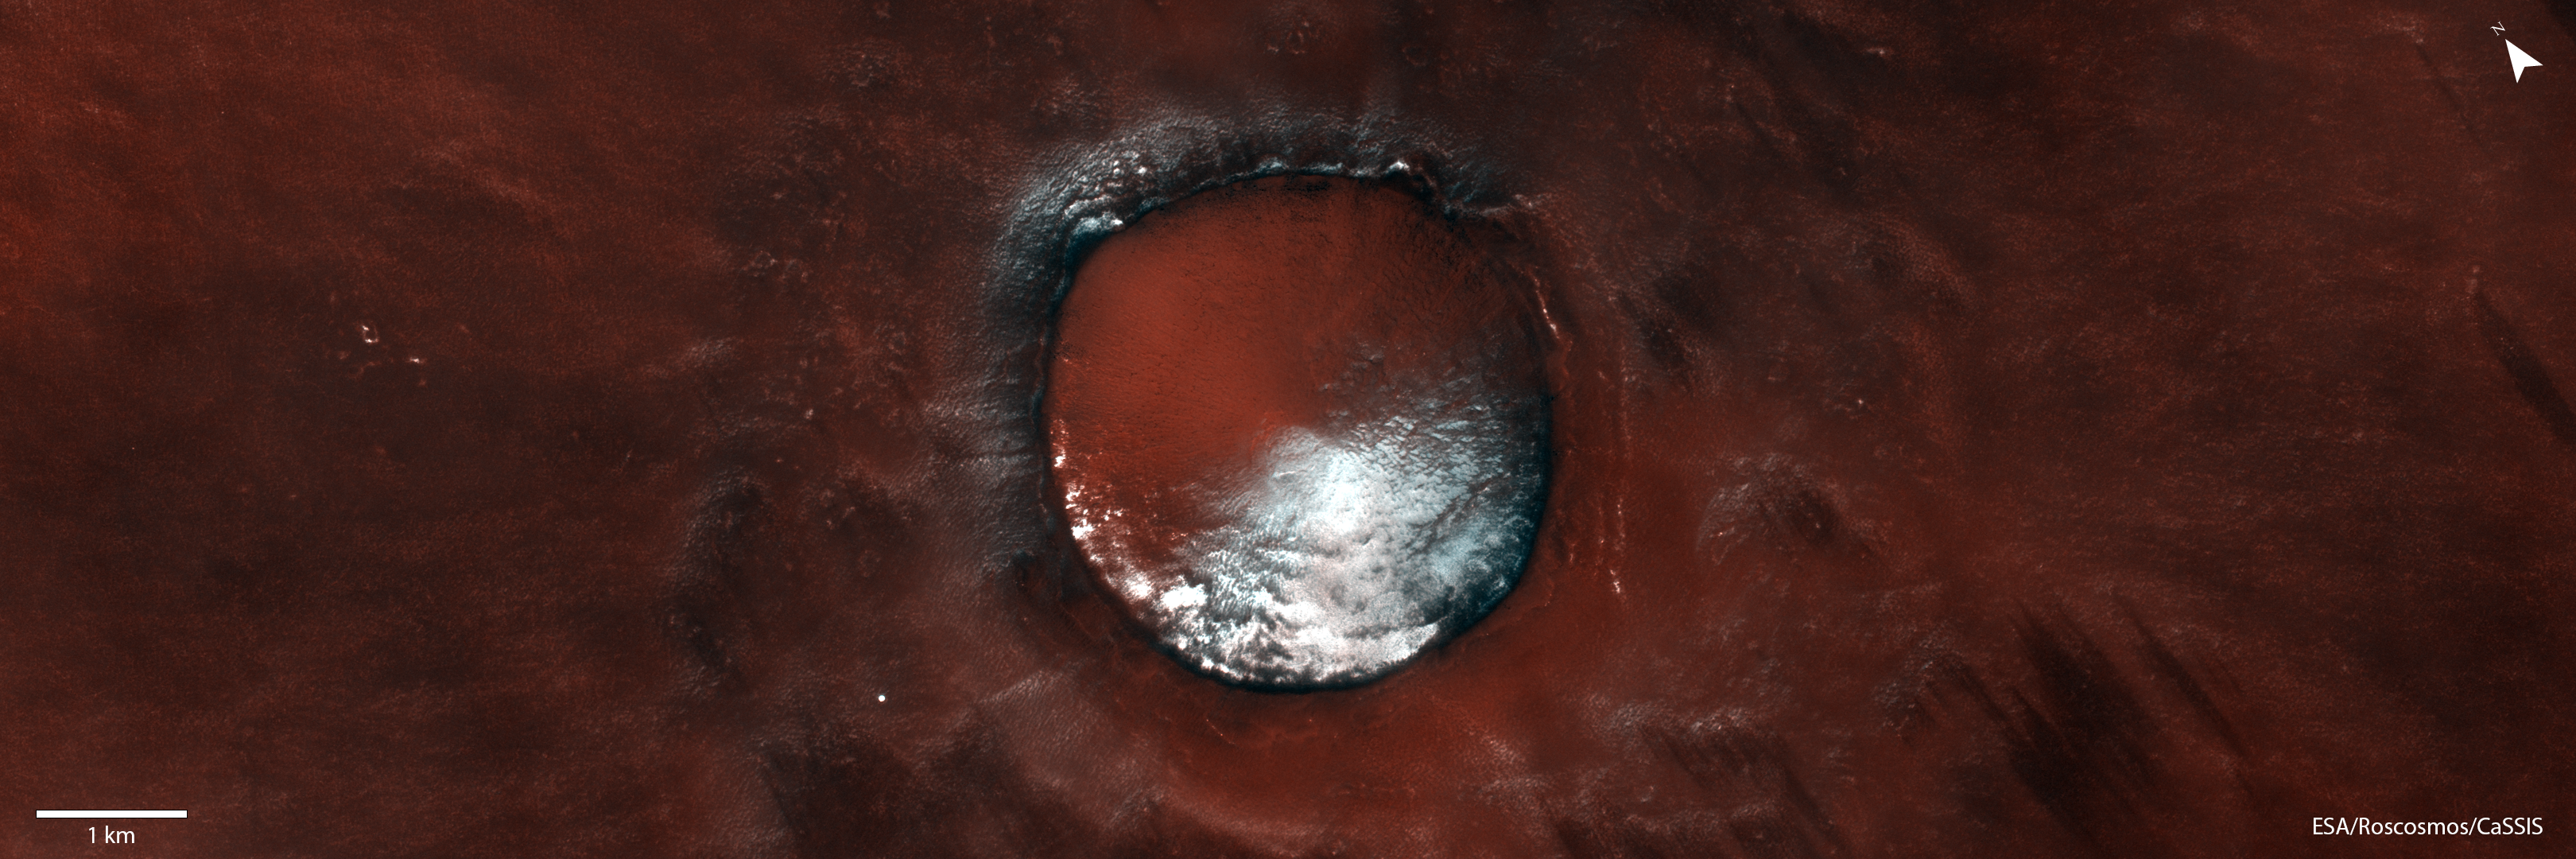 ESA – Mars beludru merah